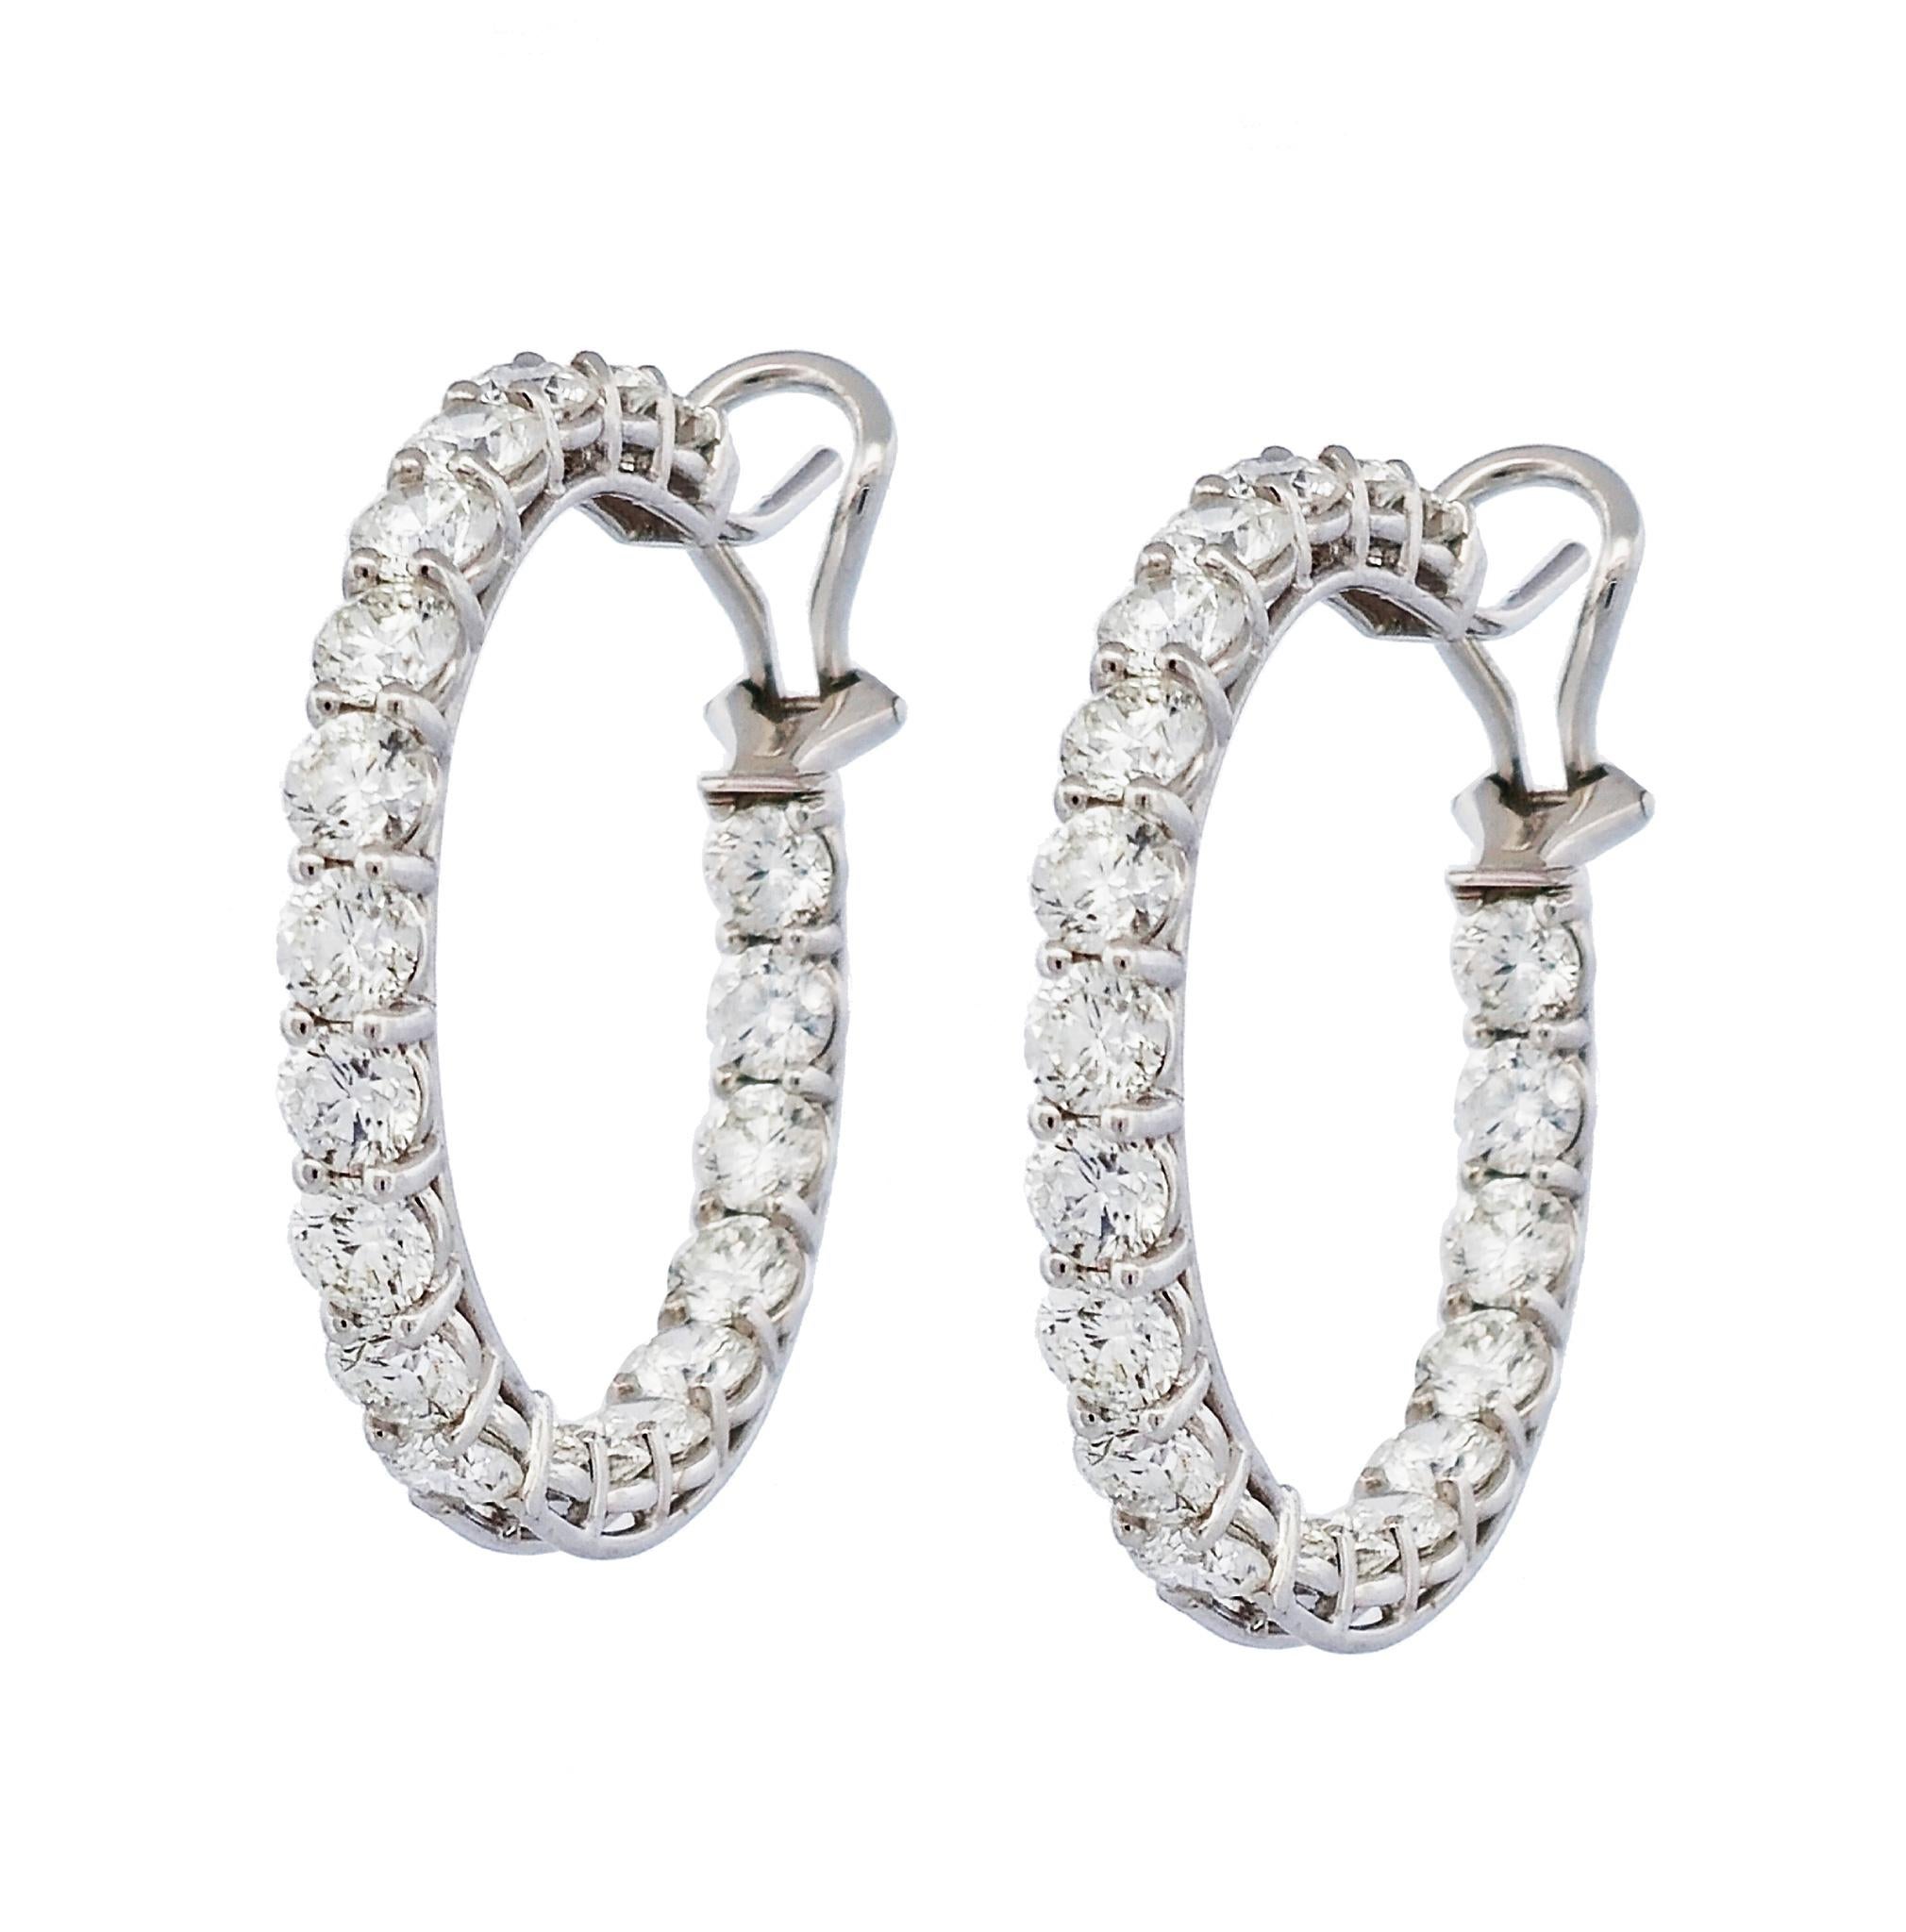 Die luxuriösen Diamant-Ohrringe aus der handgefertigten H&H Collection'S sind eine atemberaubende Ergänzung für jede Garderobe. Mit 40 funkelnden, runden Diamanten im Brillantschliff, gefasst in 18 Karat Weißgold und mit einer Zackenfassung, werden